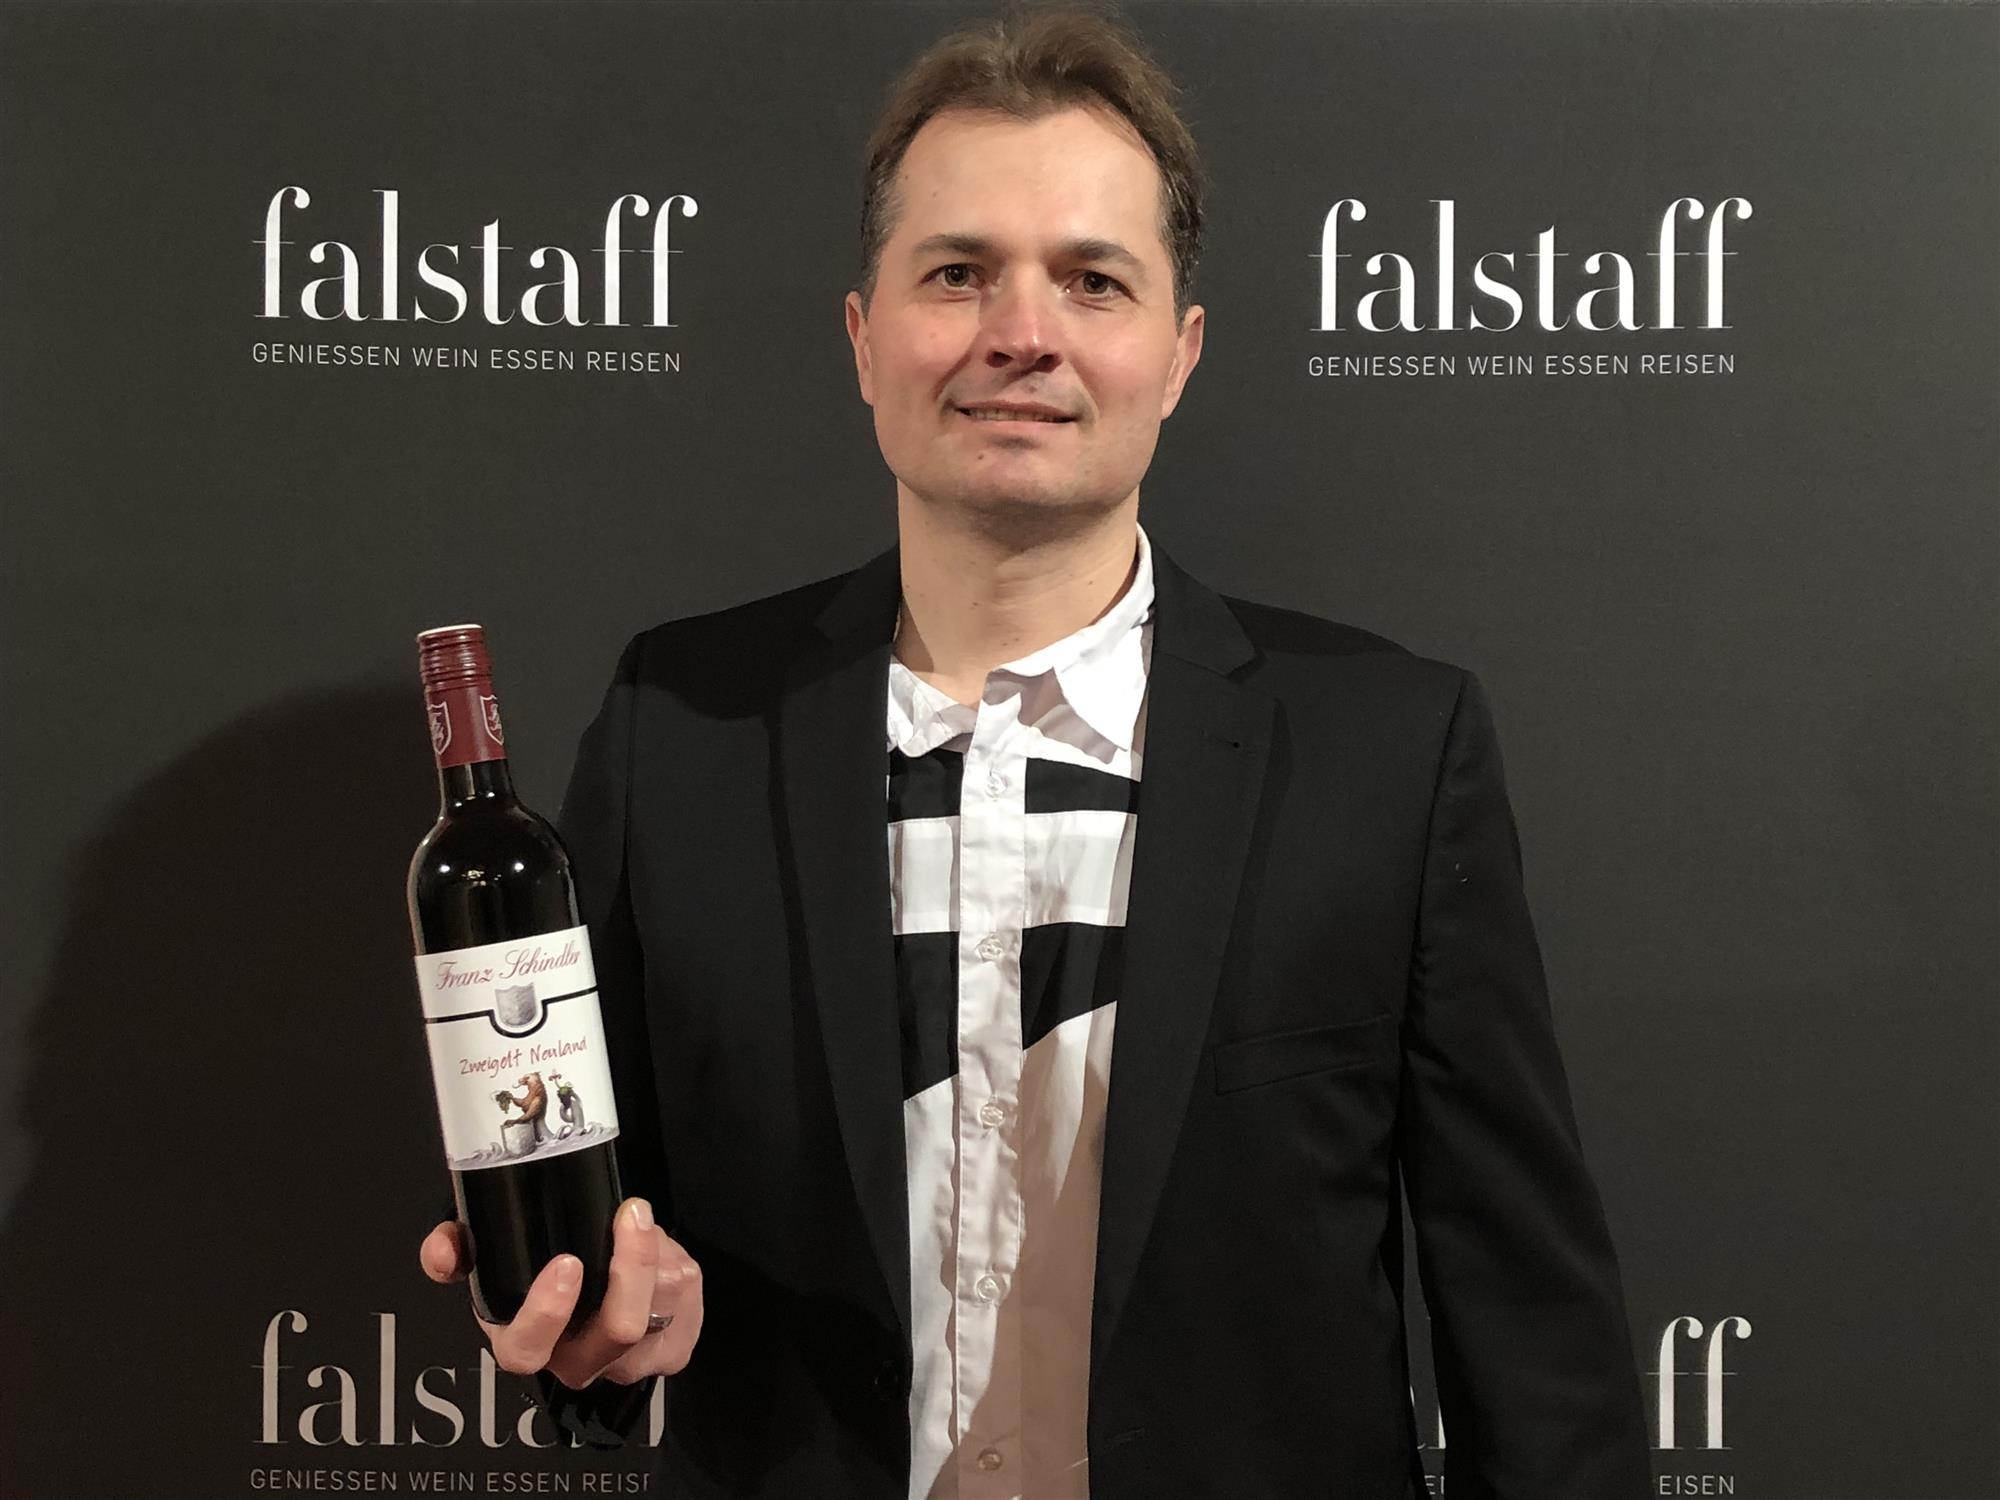 Kellermeister Ferry in elegantem Anzug hält stolz eine Flasche Wein vor einem 'falstaff' Logo.